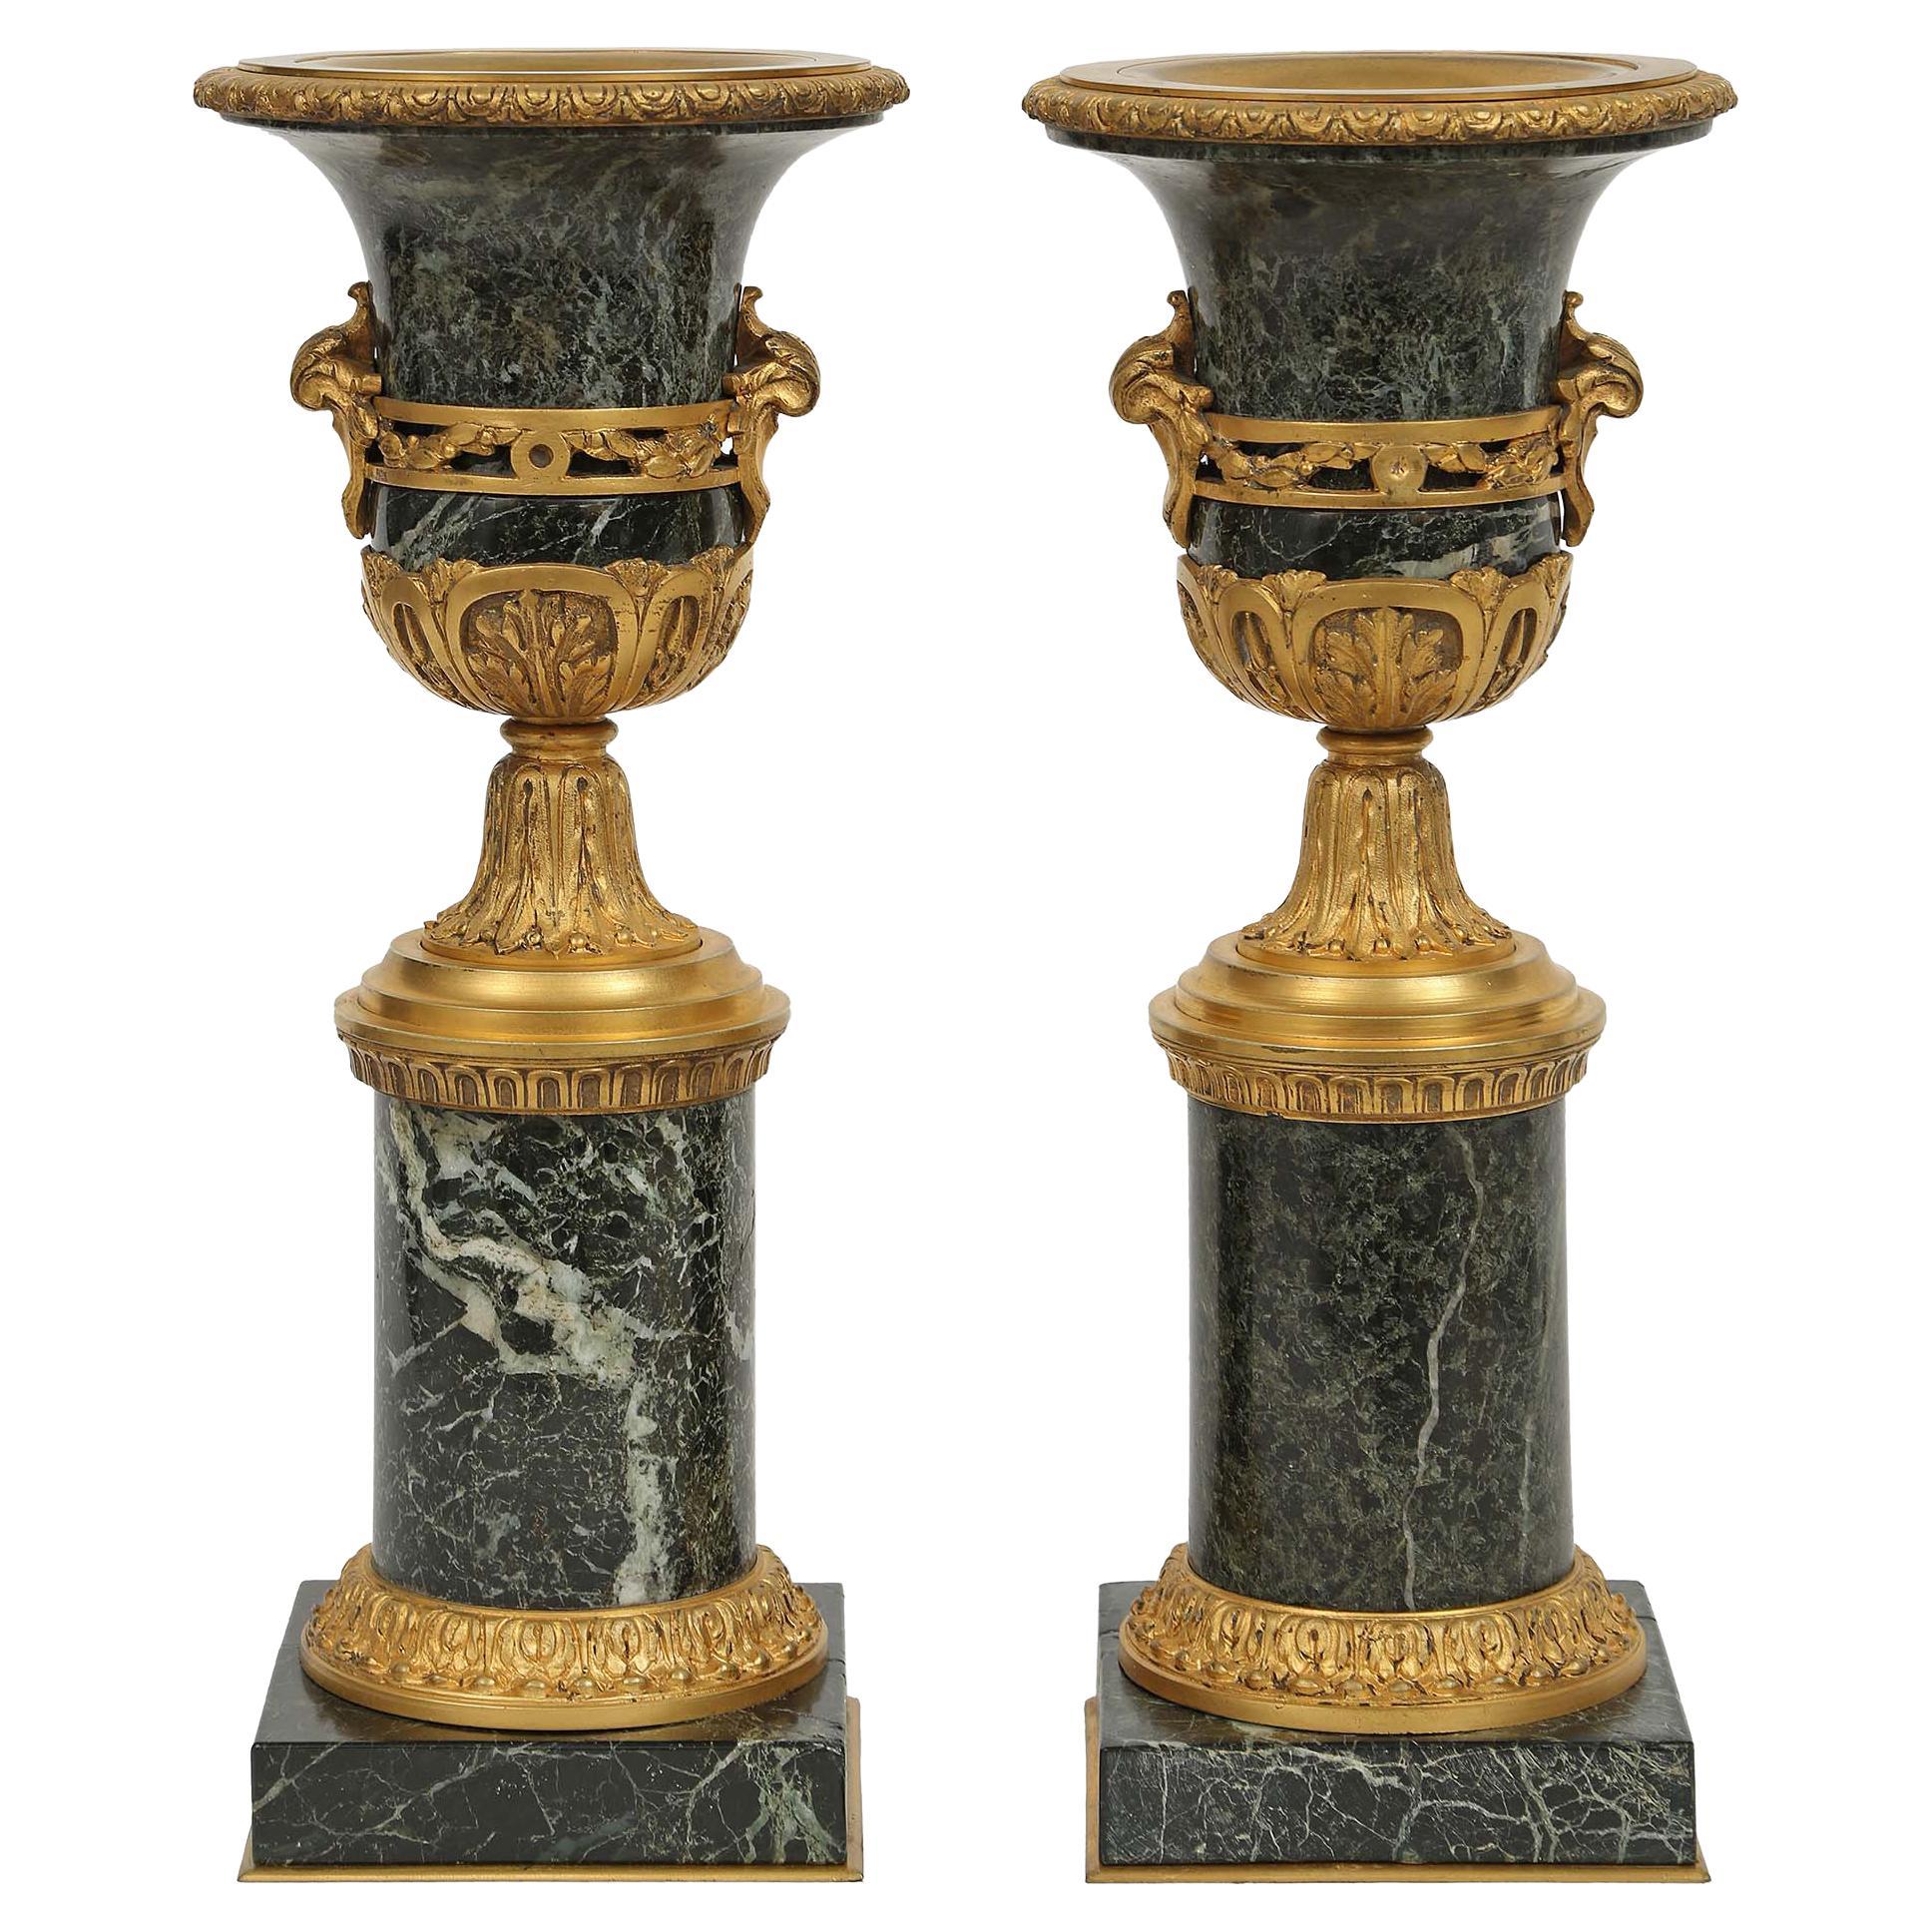 Paire de vases français de style Louis XVI en marbre et bronze doré du milieu du XIXe siècle